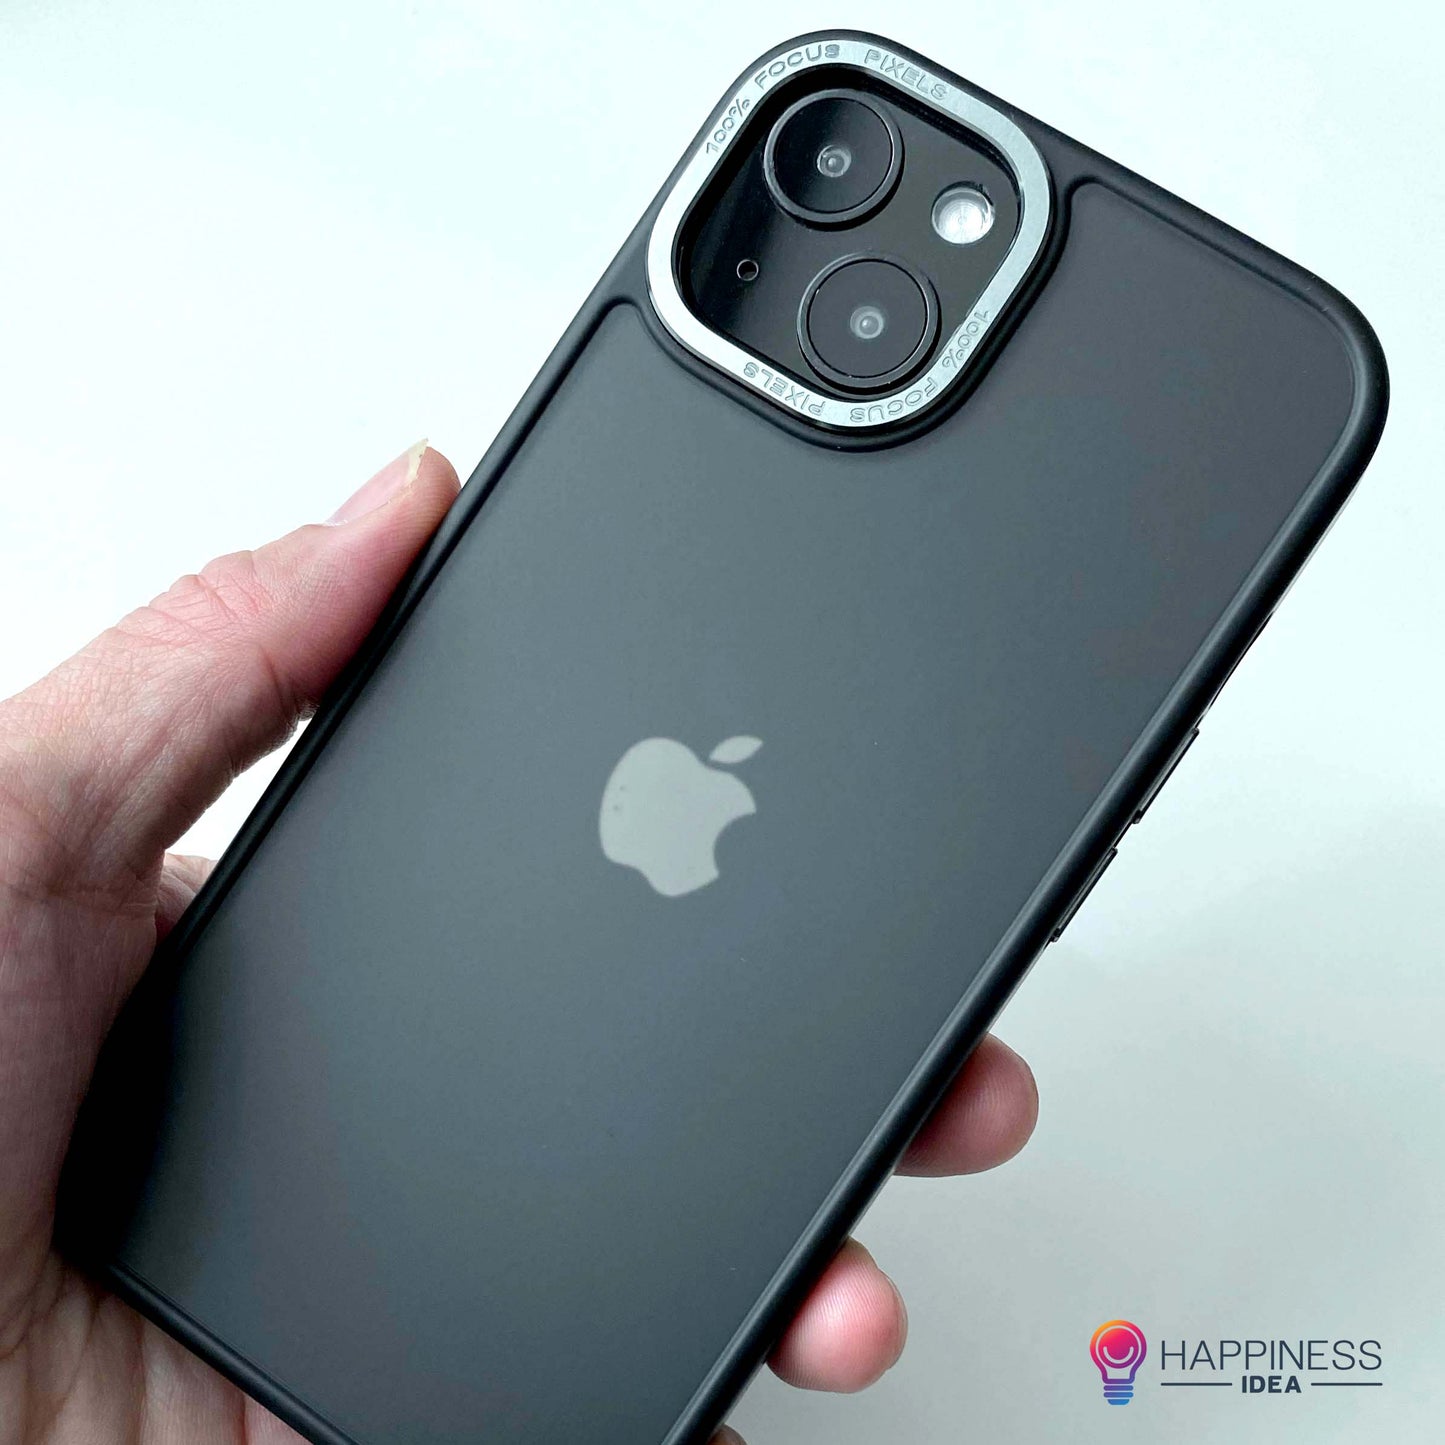 iPhone Body Guard Case Premium (Customisable)